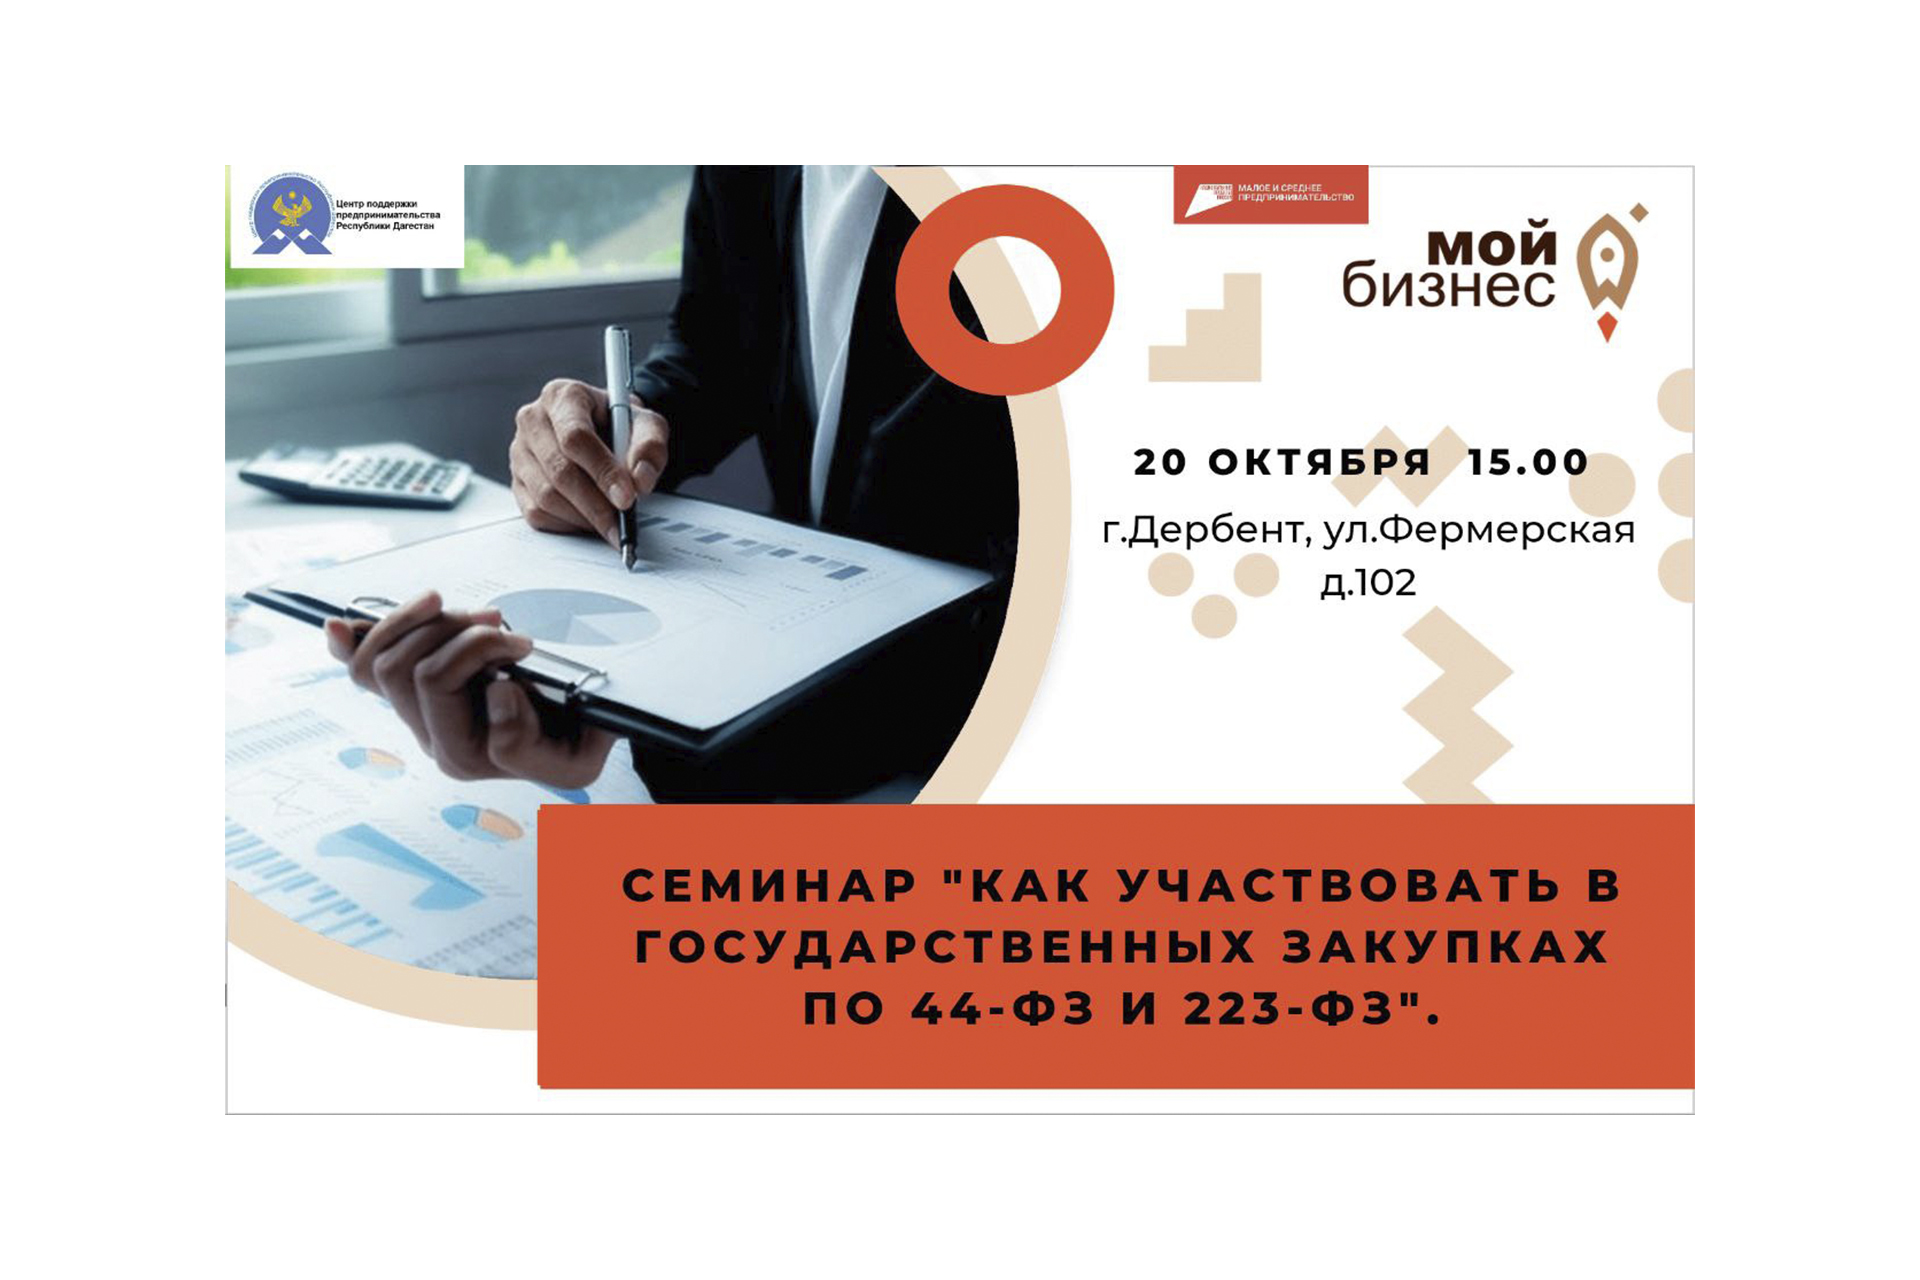 🚀20 октября 15.00 в городе Дербент пройдёт семинар "Как участвовать в государственных закупках по 44-ФЗ и 223-ФЗ".